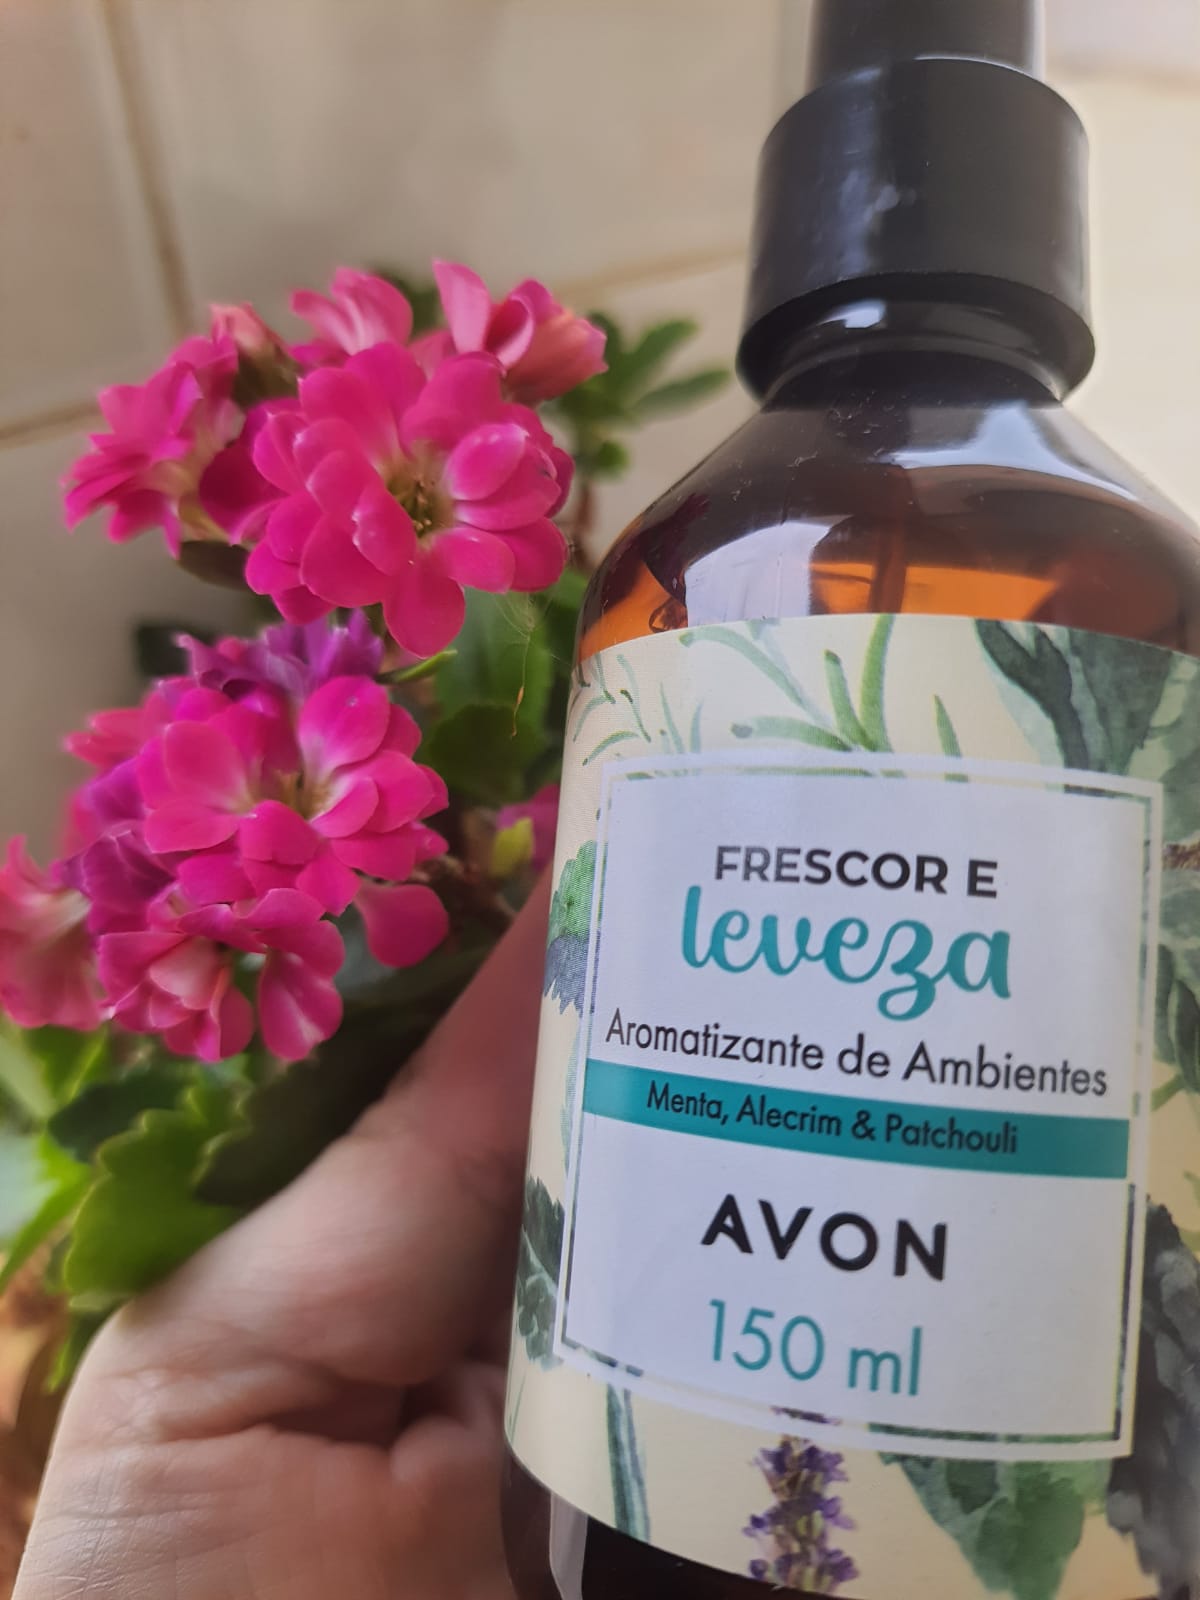 Avon Aromatizante de Ambiente Frescor e Leveza Menta, Alecrim e Patchouli 150 ml 